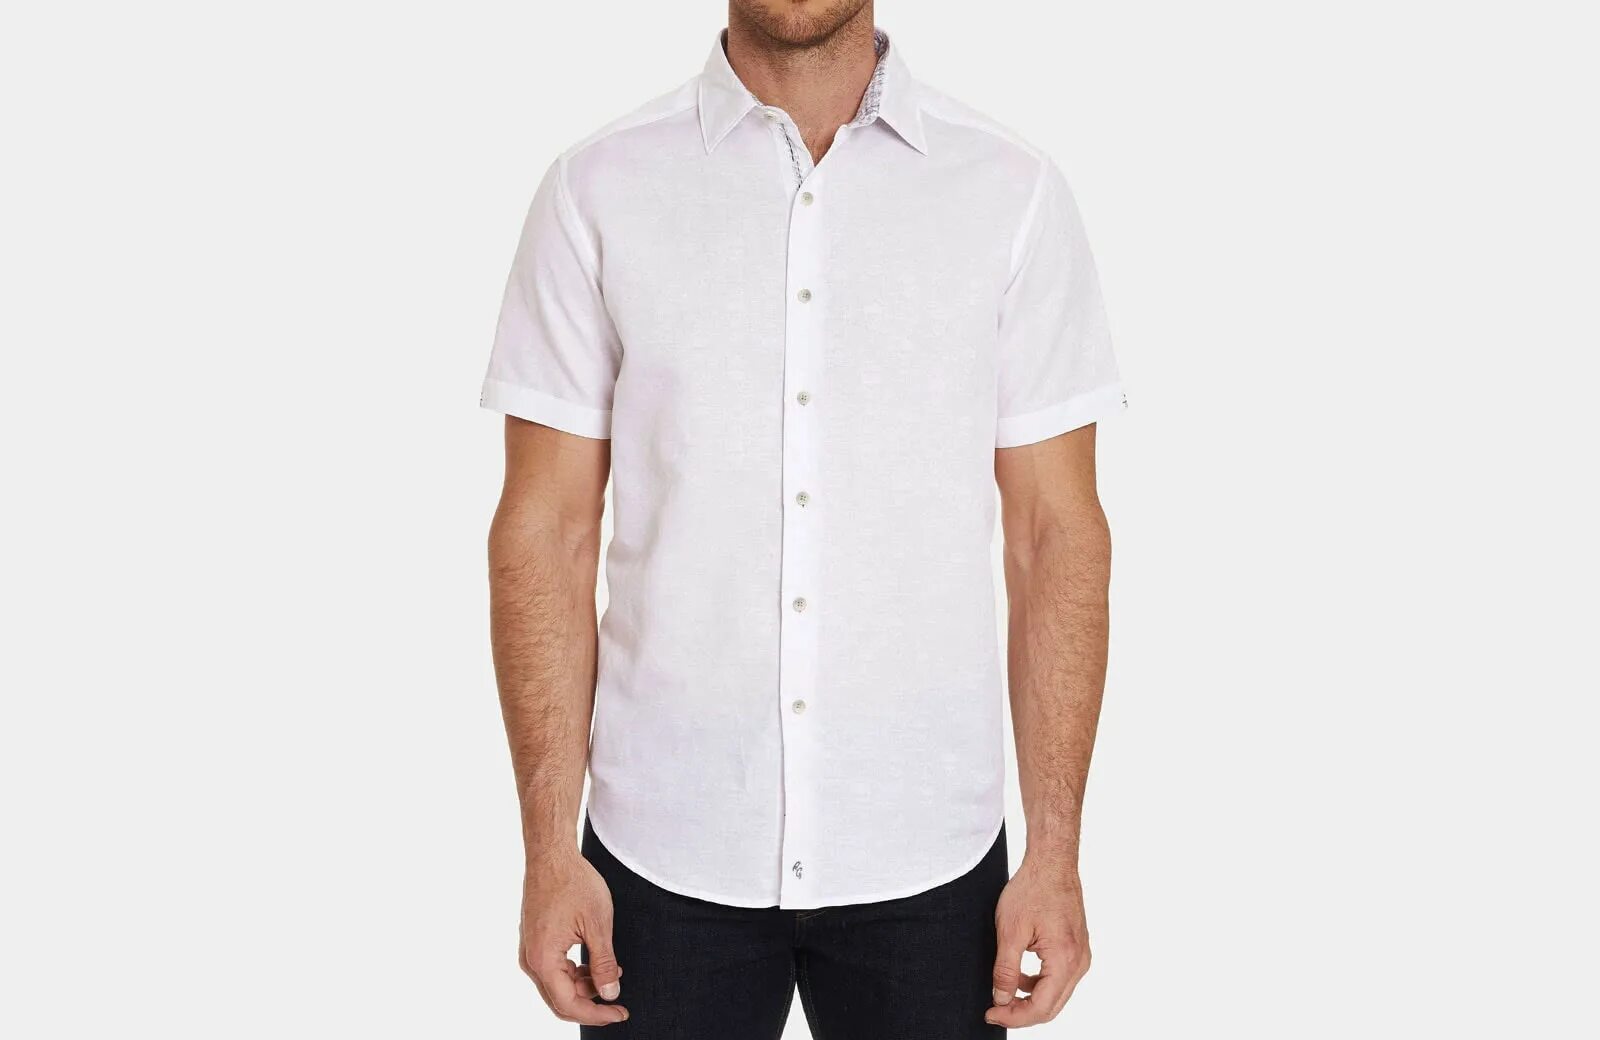 Short Sleeve Shirt. White short Sleeve Shirt. Men's short Sleeves. White Shirt with short Sleeves. Short sleeved shirt